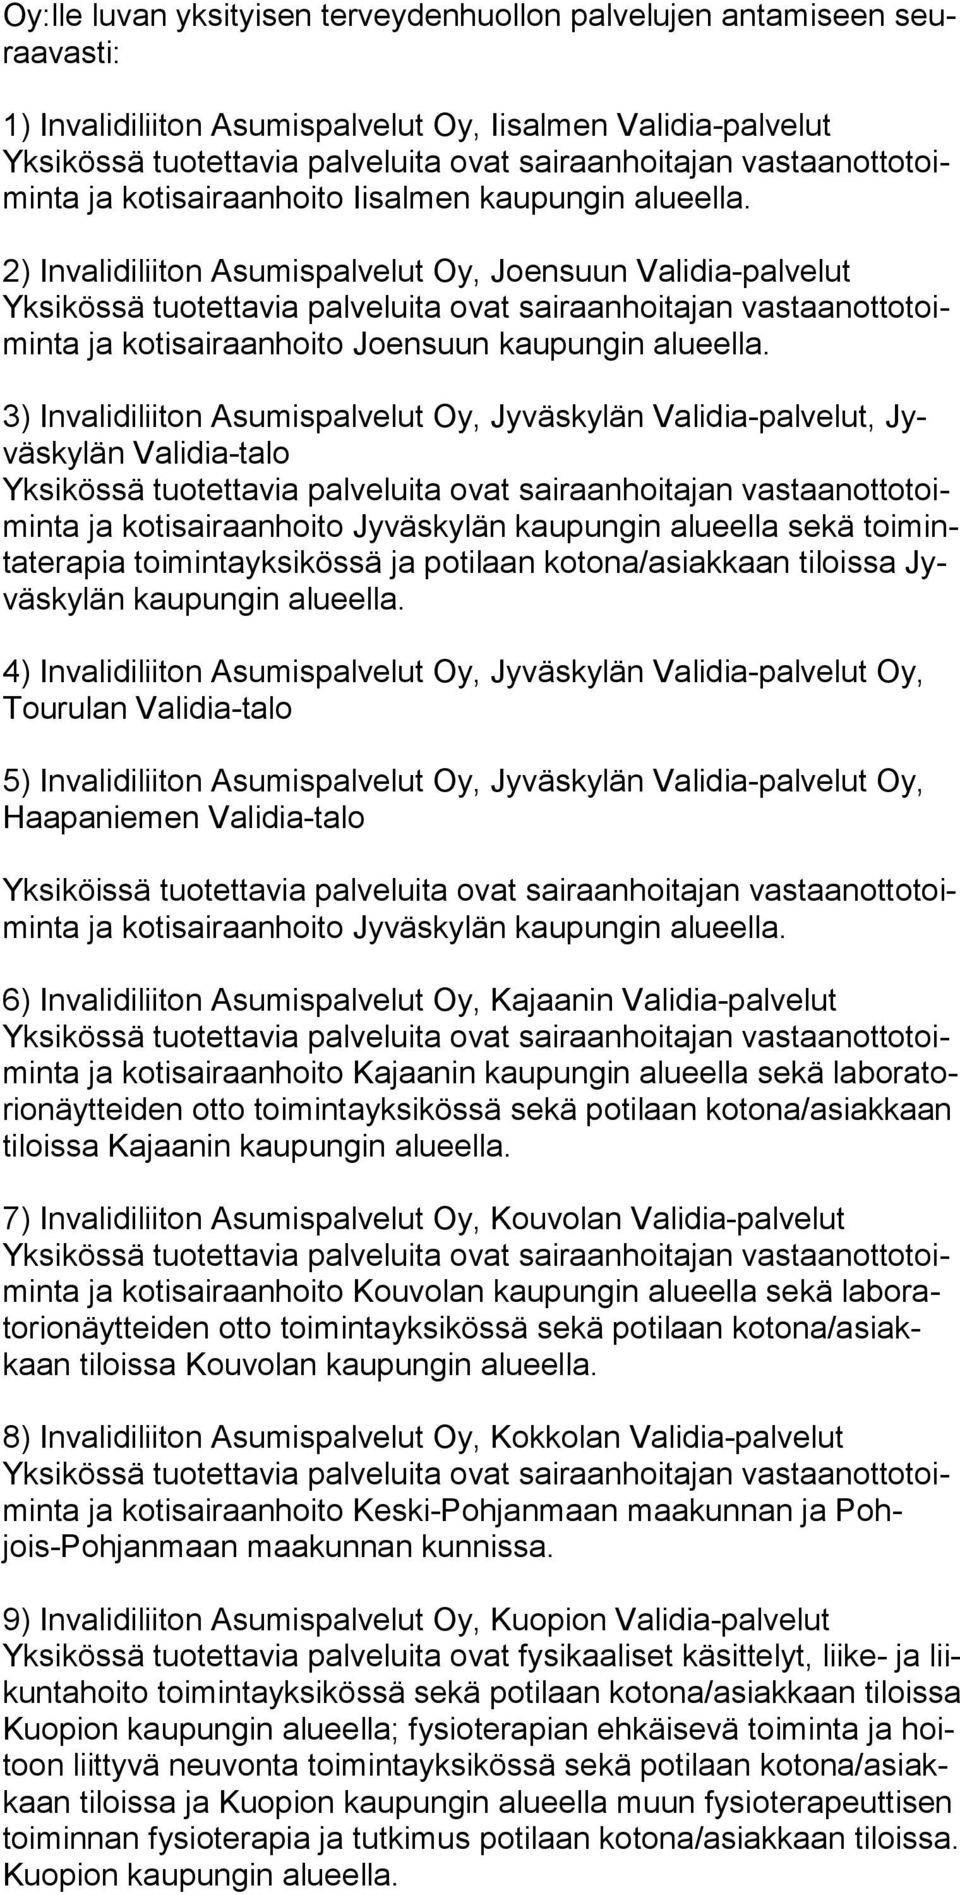 3) Invalidiliiton Asumispalvelut Oy, Jyväskylän Validia-palvelut, Jyväskylän Validia-talo ja kotisairaanhoito Jyväskylän kaupungin alueella sekä toiminta te ra pia toi min ta yk si kös sä ja potilaan